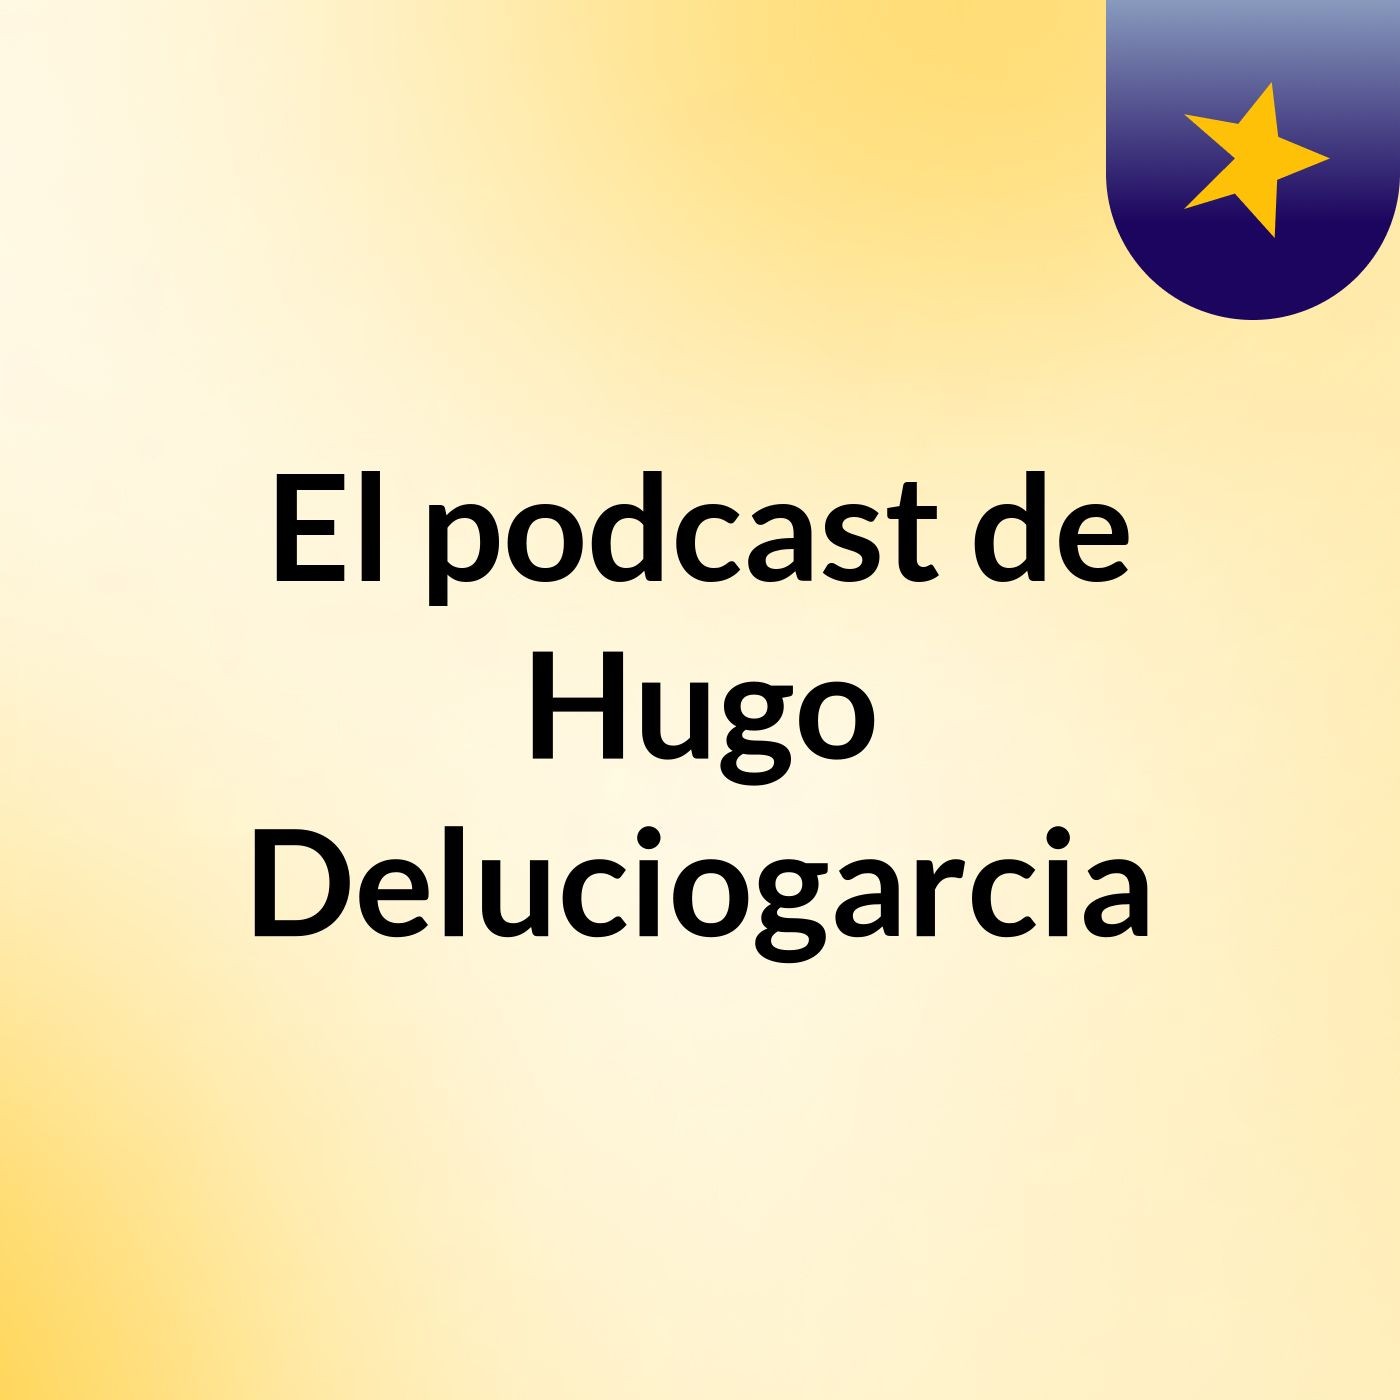 Episodio 6 - El podcast de Hugo Deluciogarcia